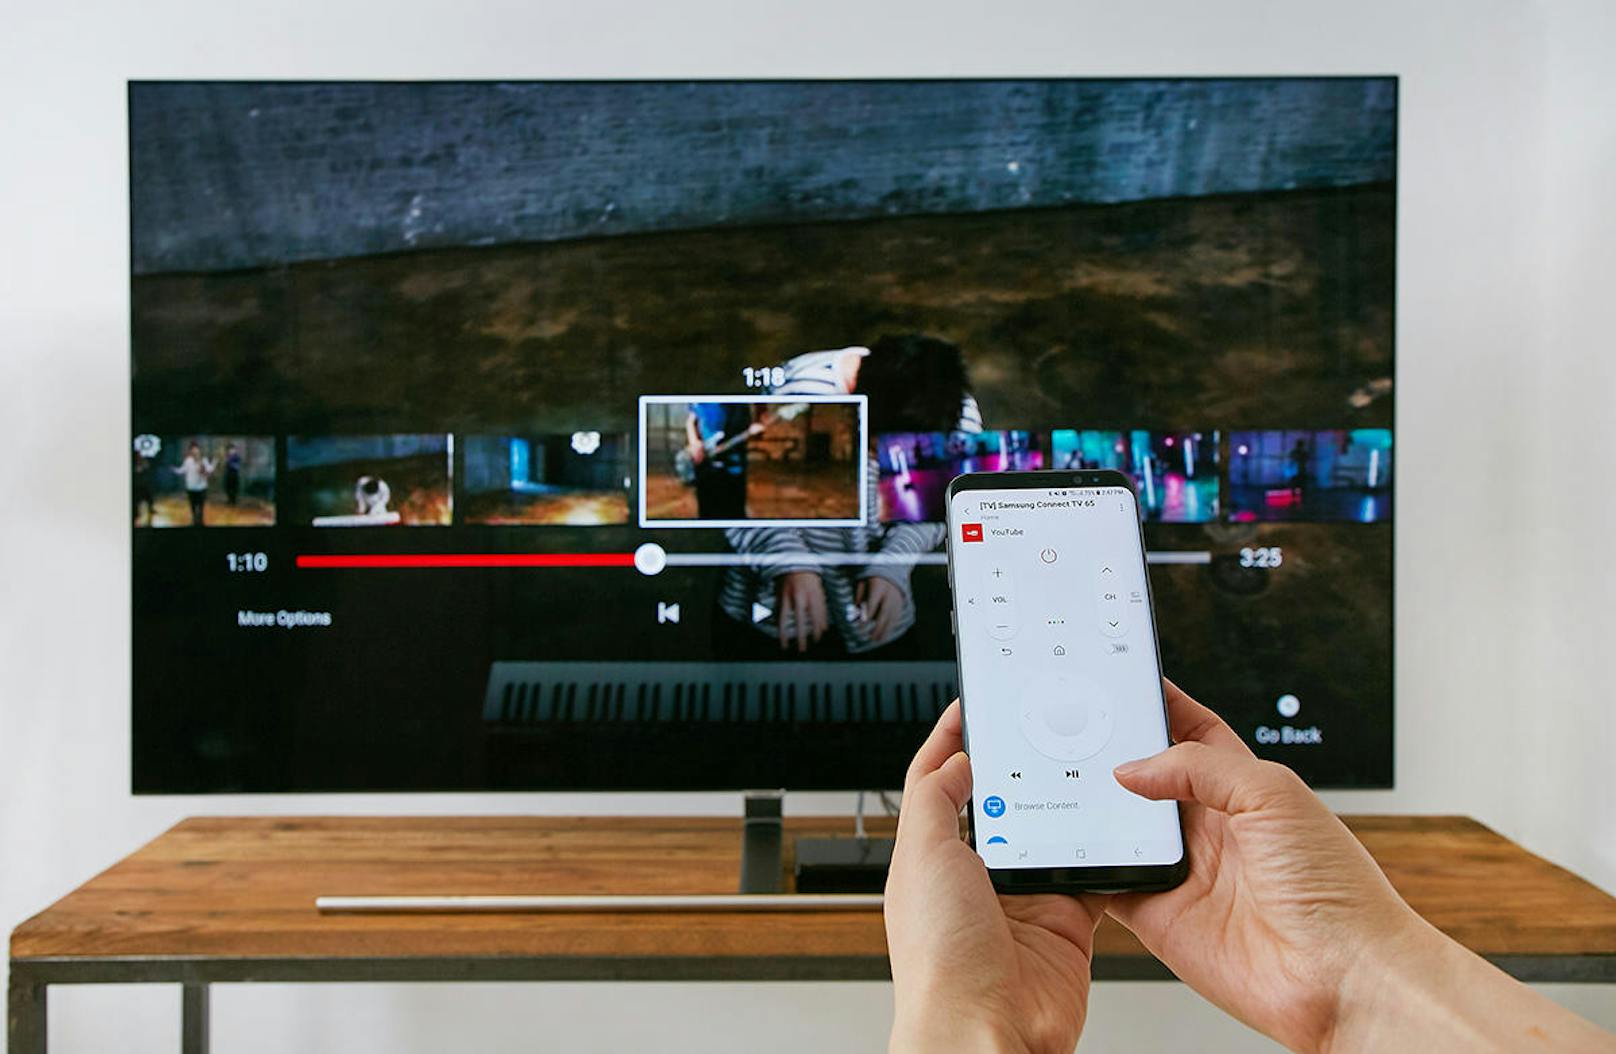 Mit Samsung Connect wird das Handy zur Fernbedienung für das Haus. Samsung-eigene und -kompatible Geräte wie Lampen, Fernseher und Kühlschränke können zentral in einer App gesteuert werden. Mit Scripts kann so beispielsweise definiert werden, dass das TV-Gerät und das Licht automatisch ausgeschaltet werden, wenn man das Haus verlässt.